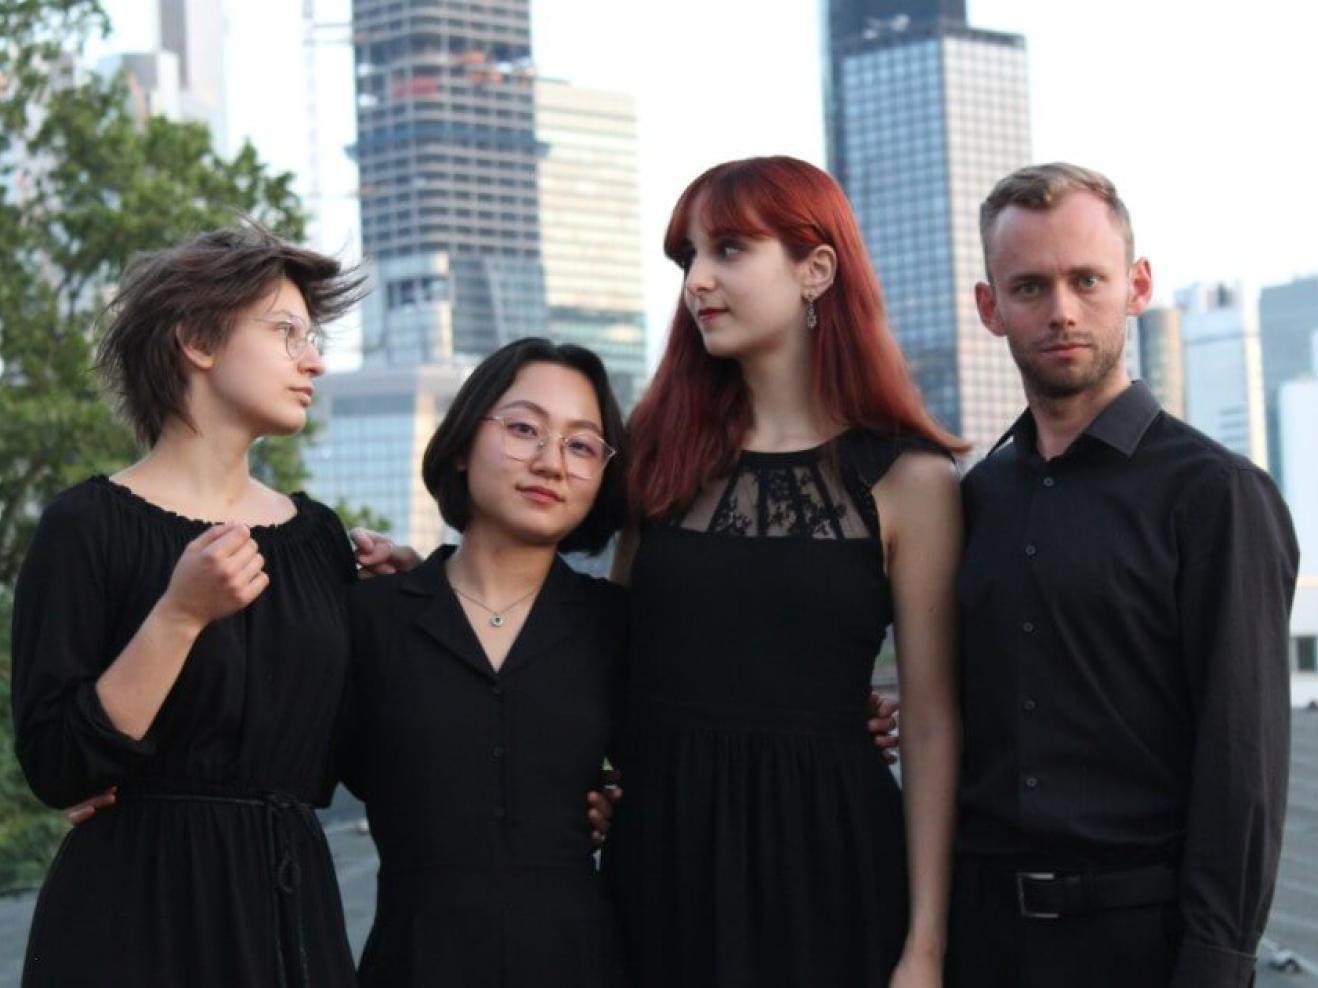 Die vier Musiker*innen des Eunoia Ensembles vor der Skyline Frankfurts